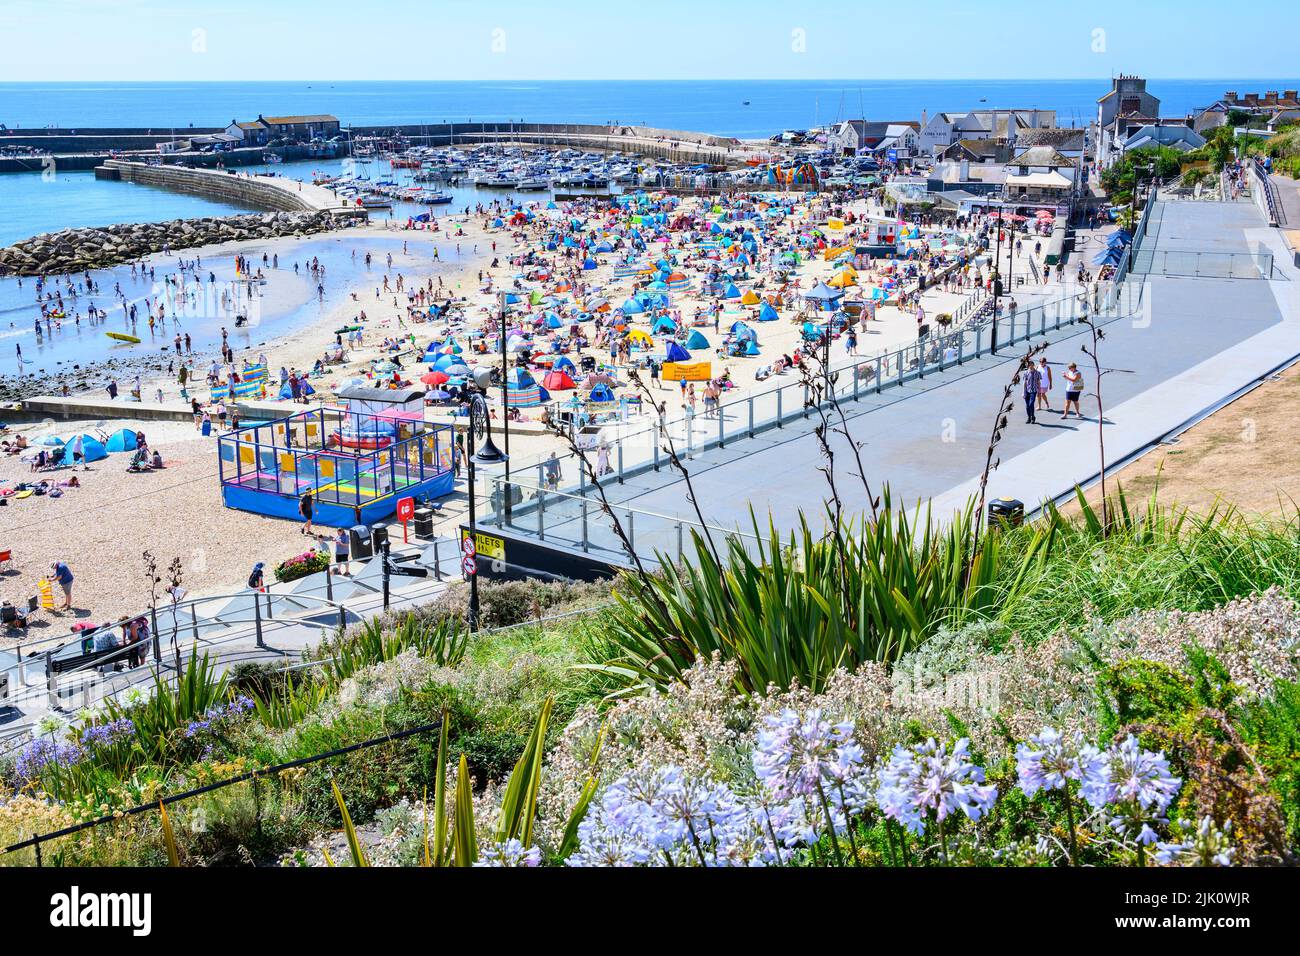 Lyme Regis, Dorset, Reino Unido. 29th de julio de 2022. Clima en el Reino Unido: Las multitudes de turistas y bañistas acuden a la playa abarrotada de la localidad costera de Lyme Regis para disfrutar del sol abrasador. Las familias, los turistas y los que buscan sol se empaparon del precioso clima soleado, ya que hizo un bienvenido regreso a tiempo para el fin de semana. Crédito: Celia McMahon/Alamy Live News Foto de stock